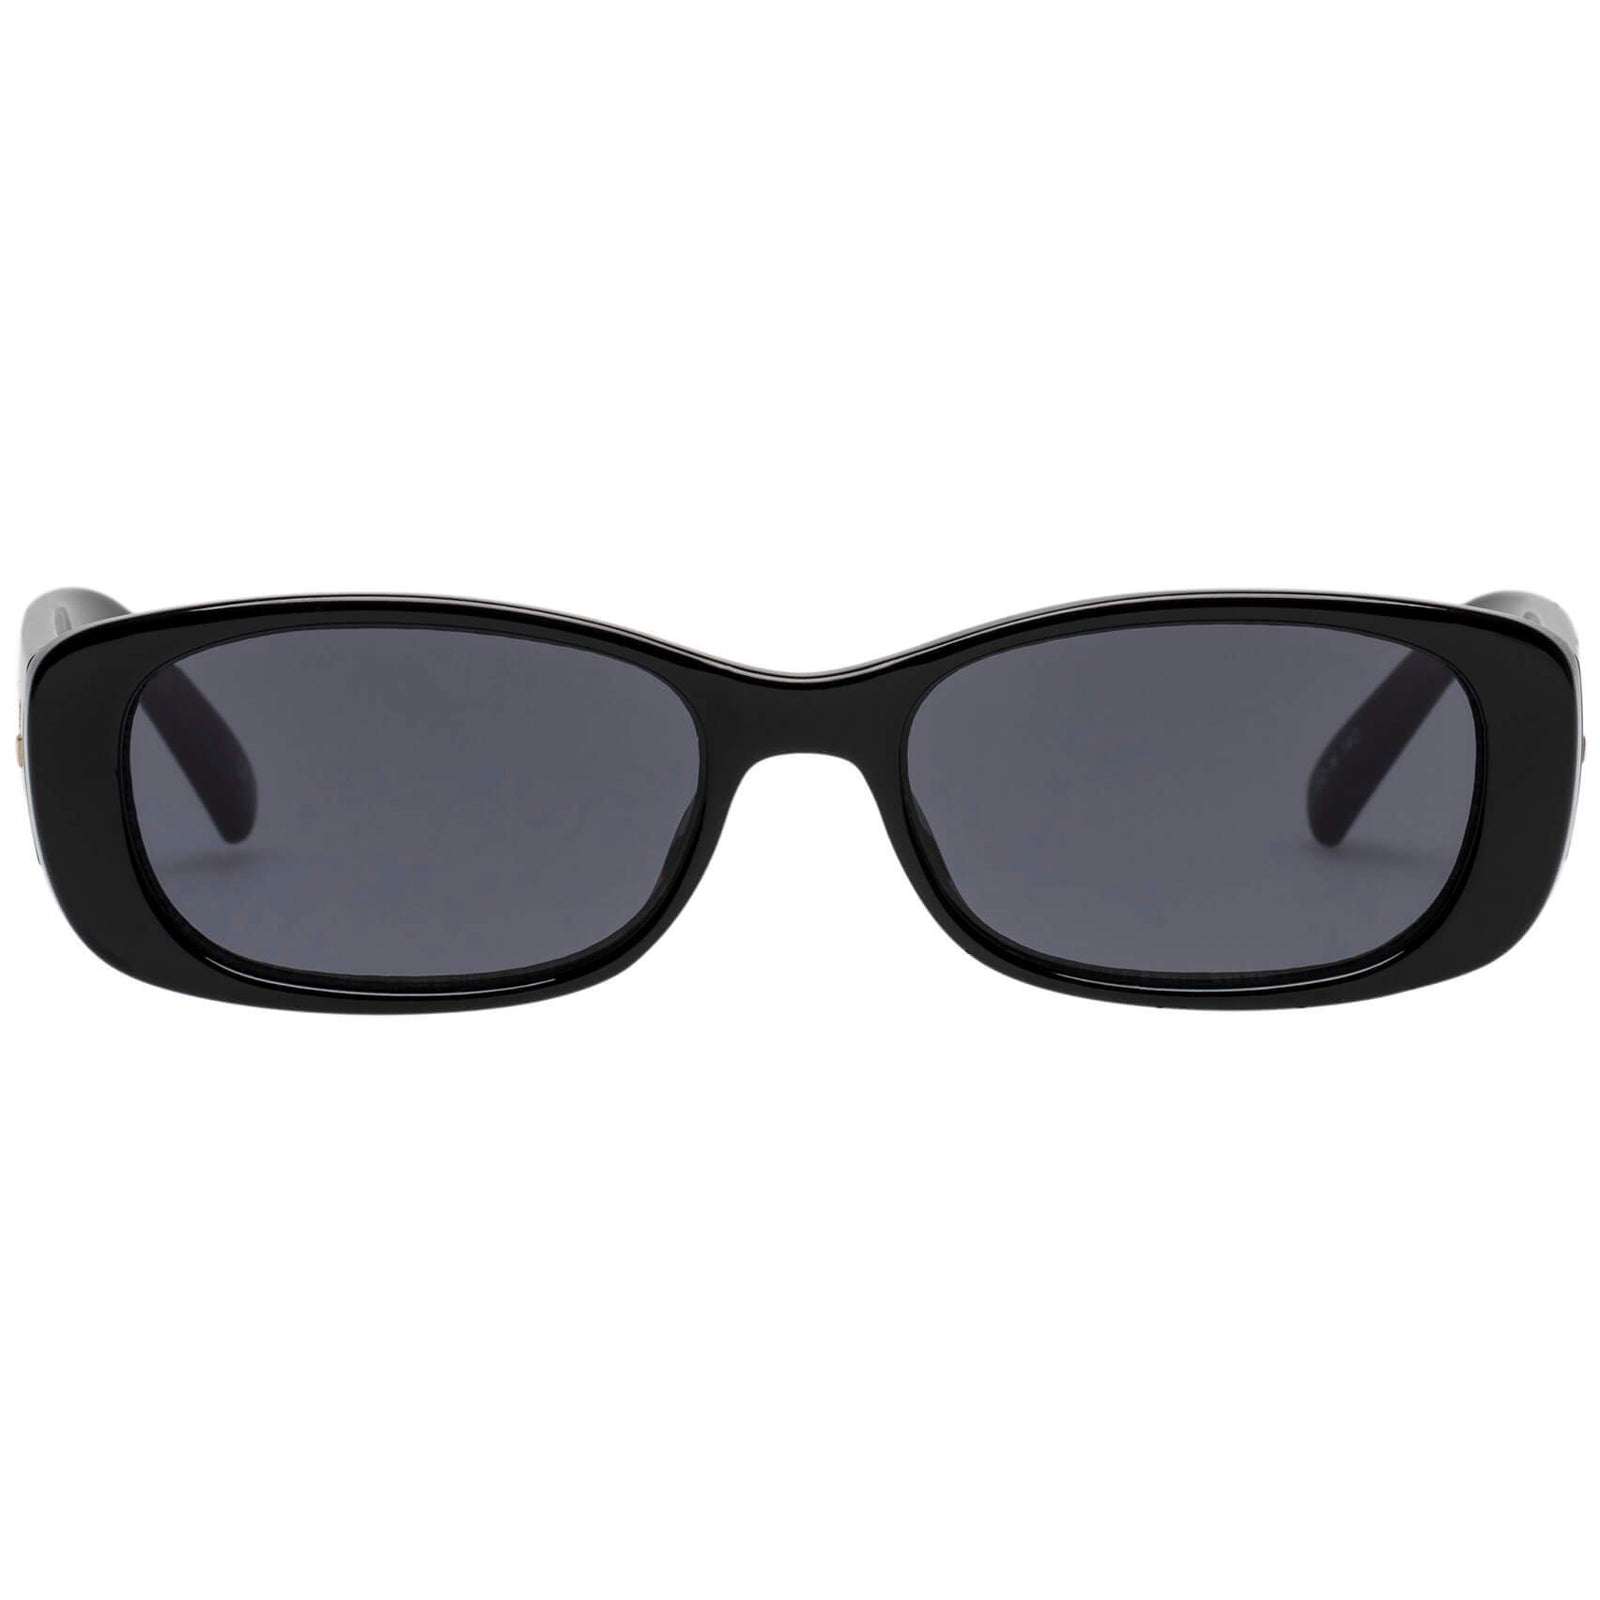 YUM Polarized Ballistic Style Fishing Sunglasses Tortoise Frame